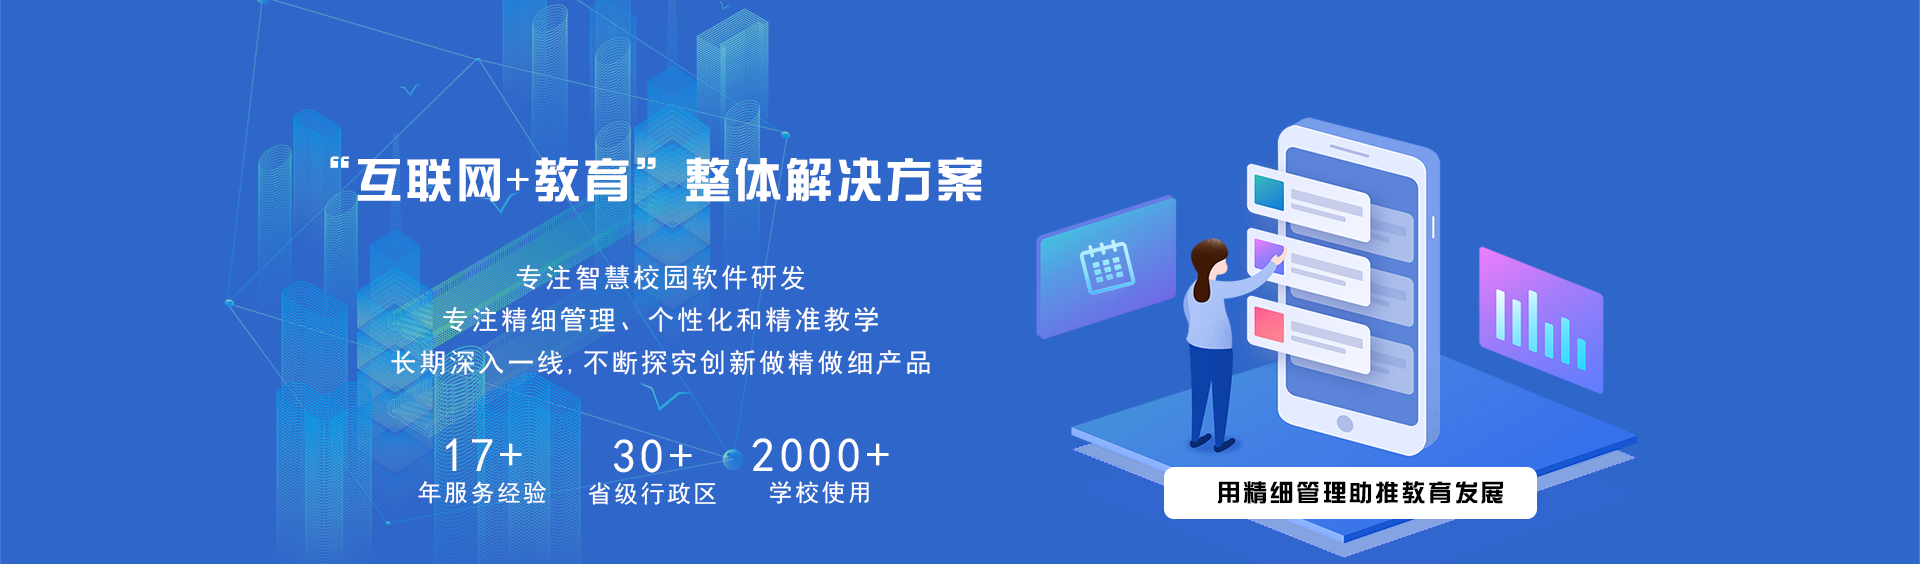 关于当前产品4066全球玩家信心之选·(中国)官方网站的成功案例等相关图片